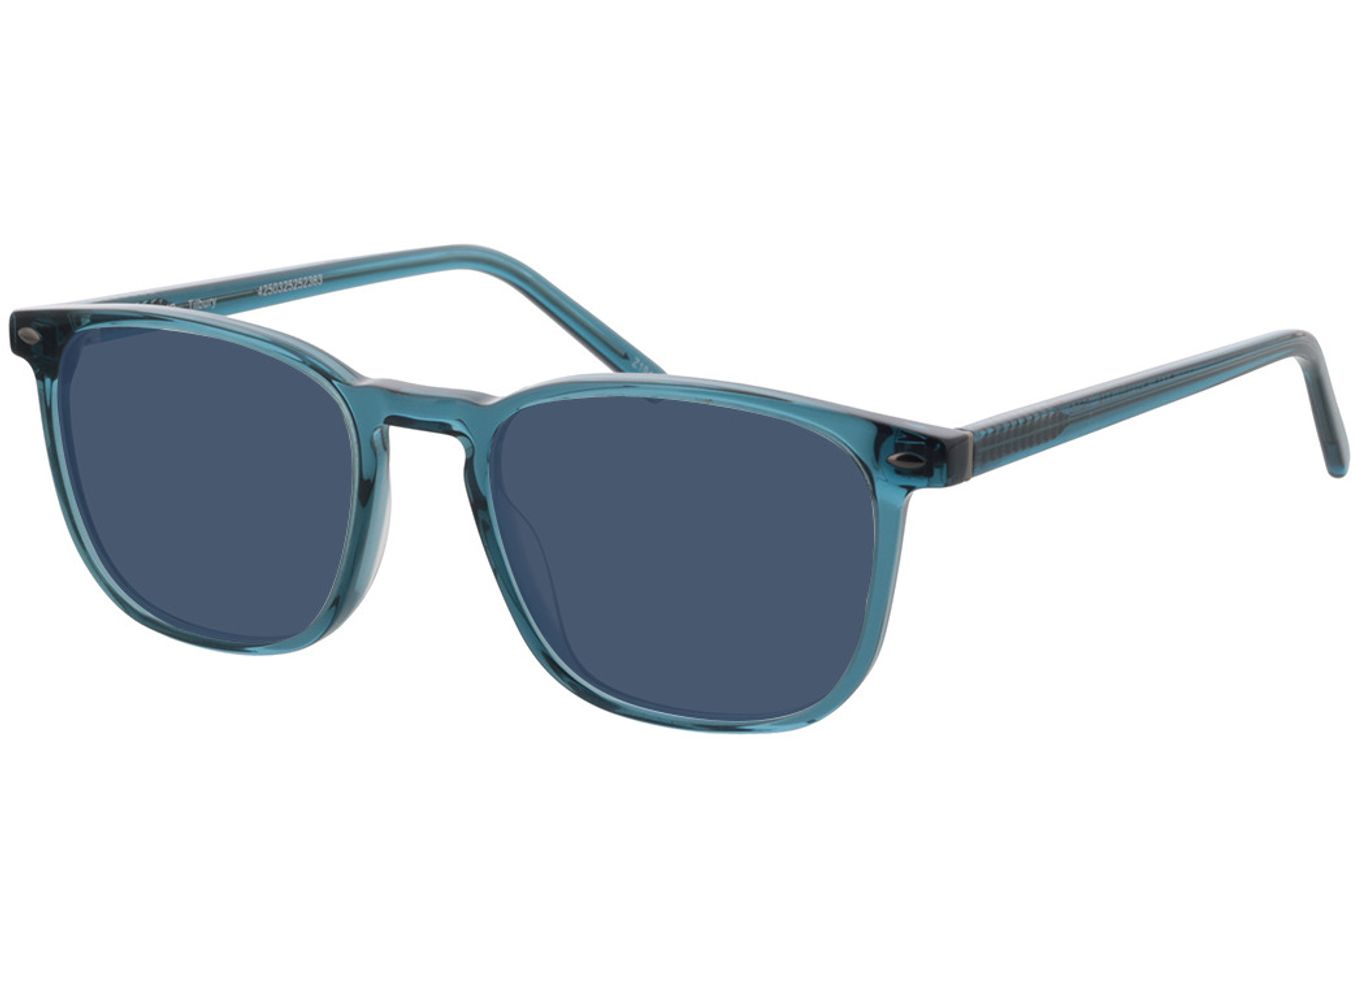 Tilbury - blau Sonnenbrille ohne Sehstärke, Vollrand, Eckig von Brille24 Collection